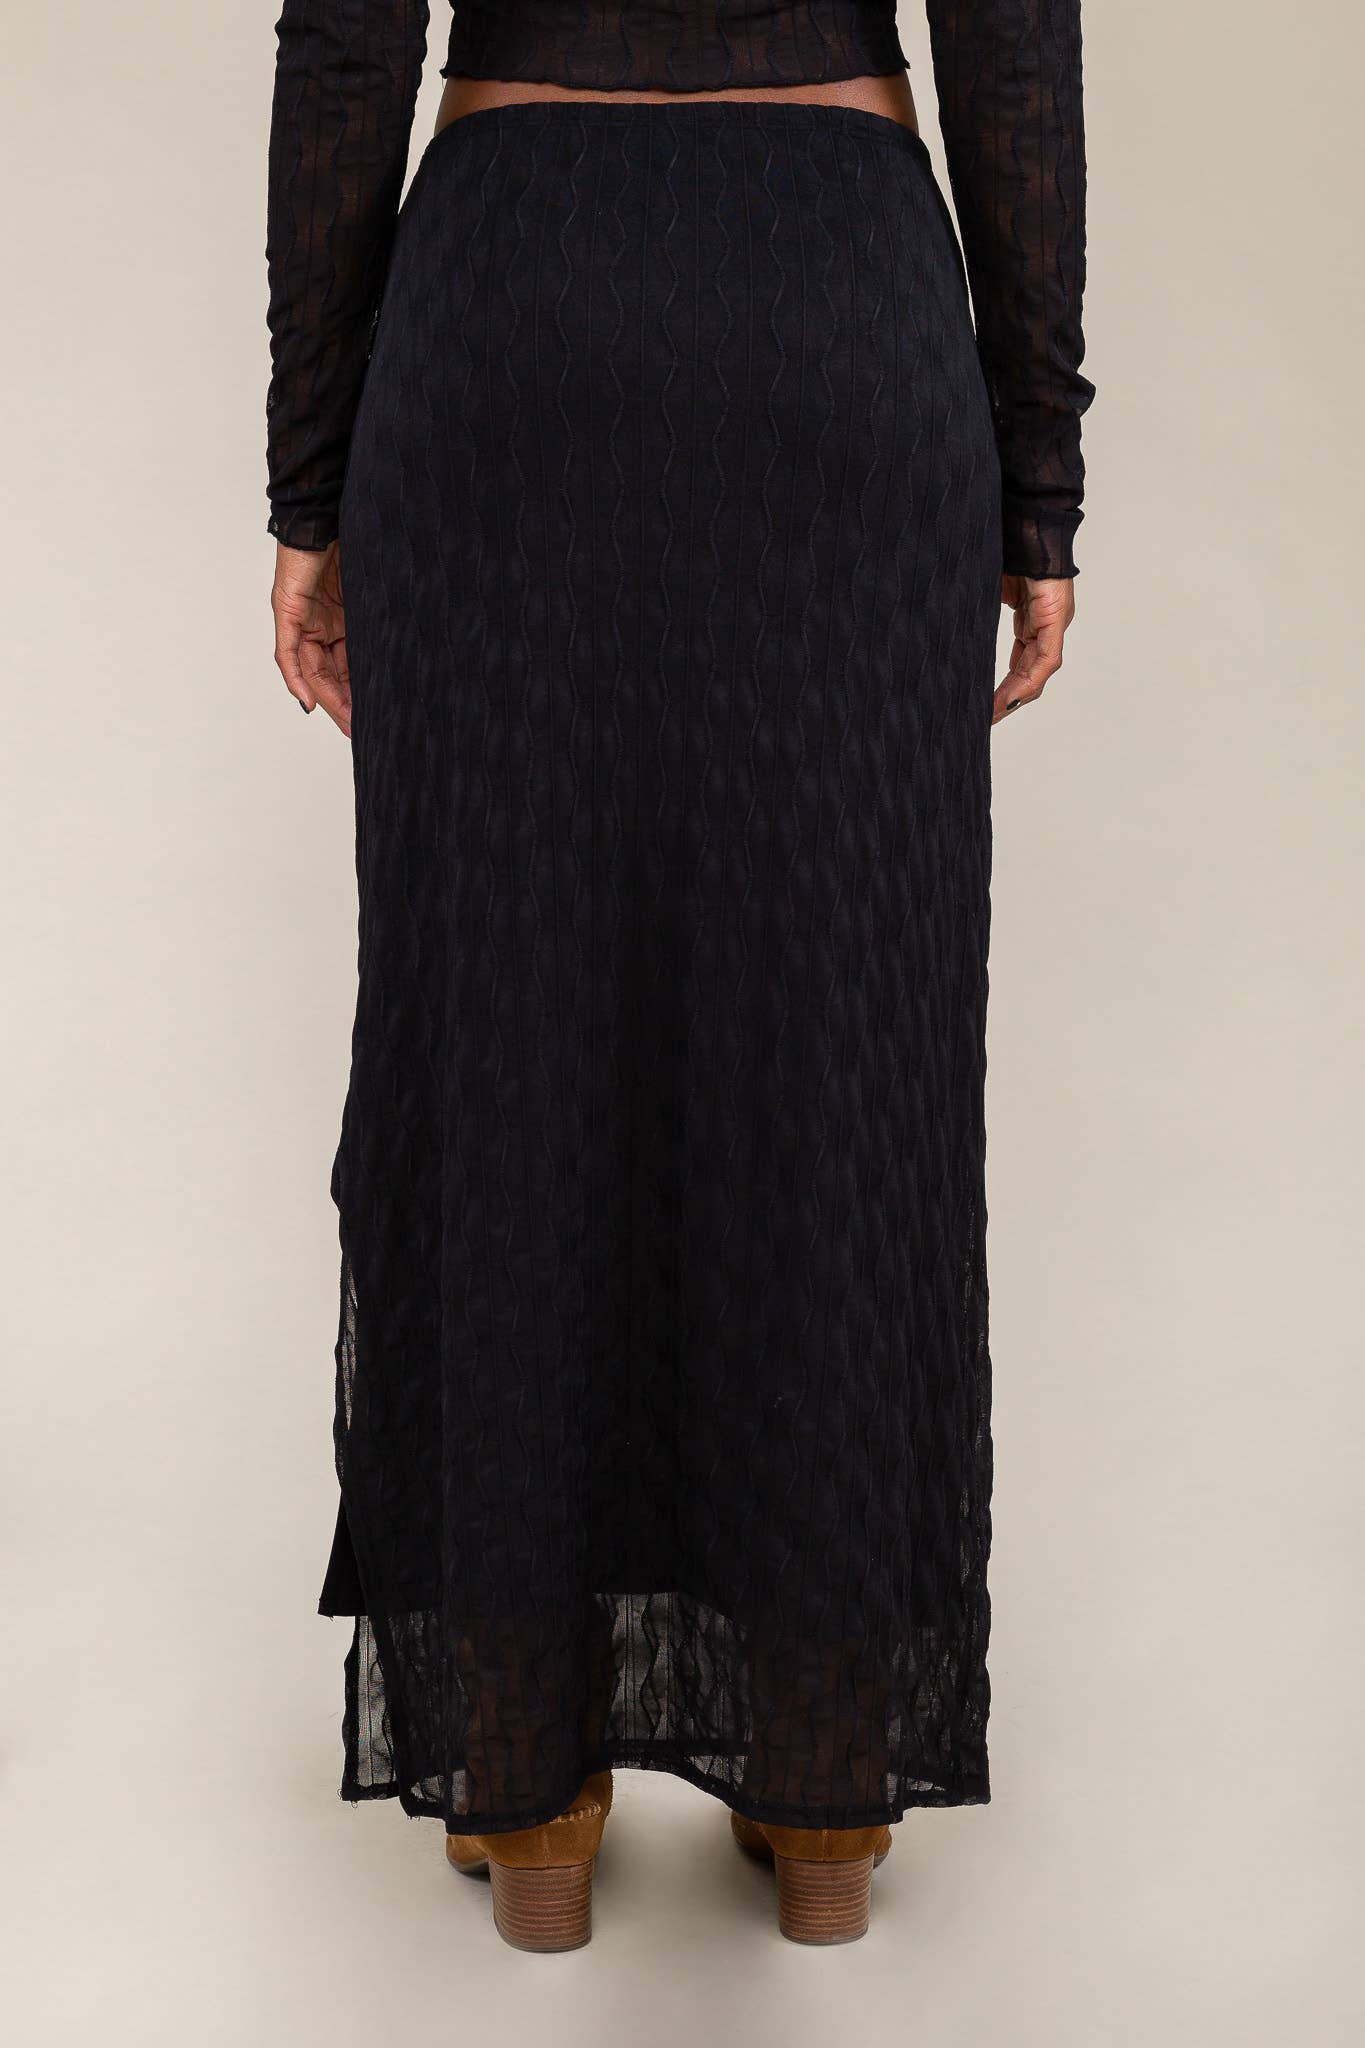 Abra Jacquard Mesh Skirt in Black